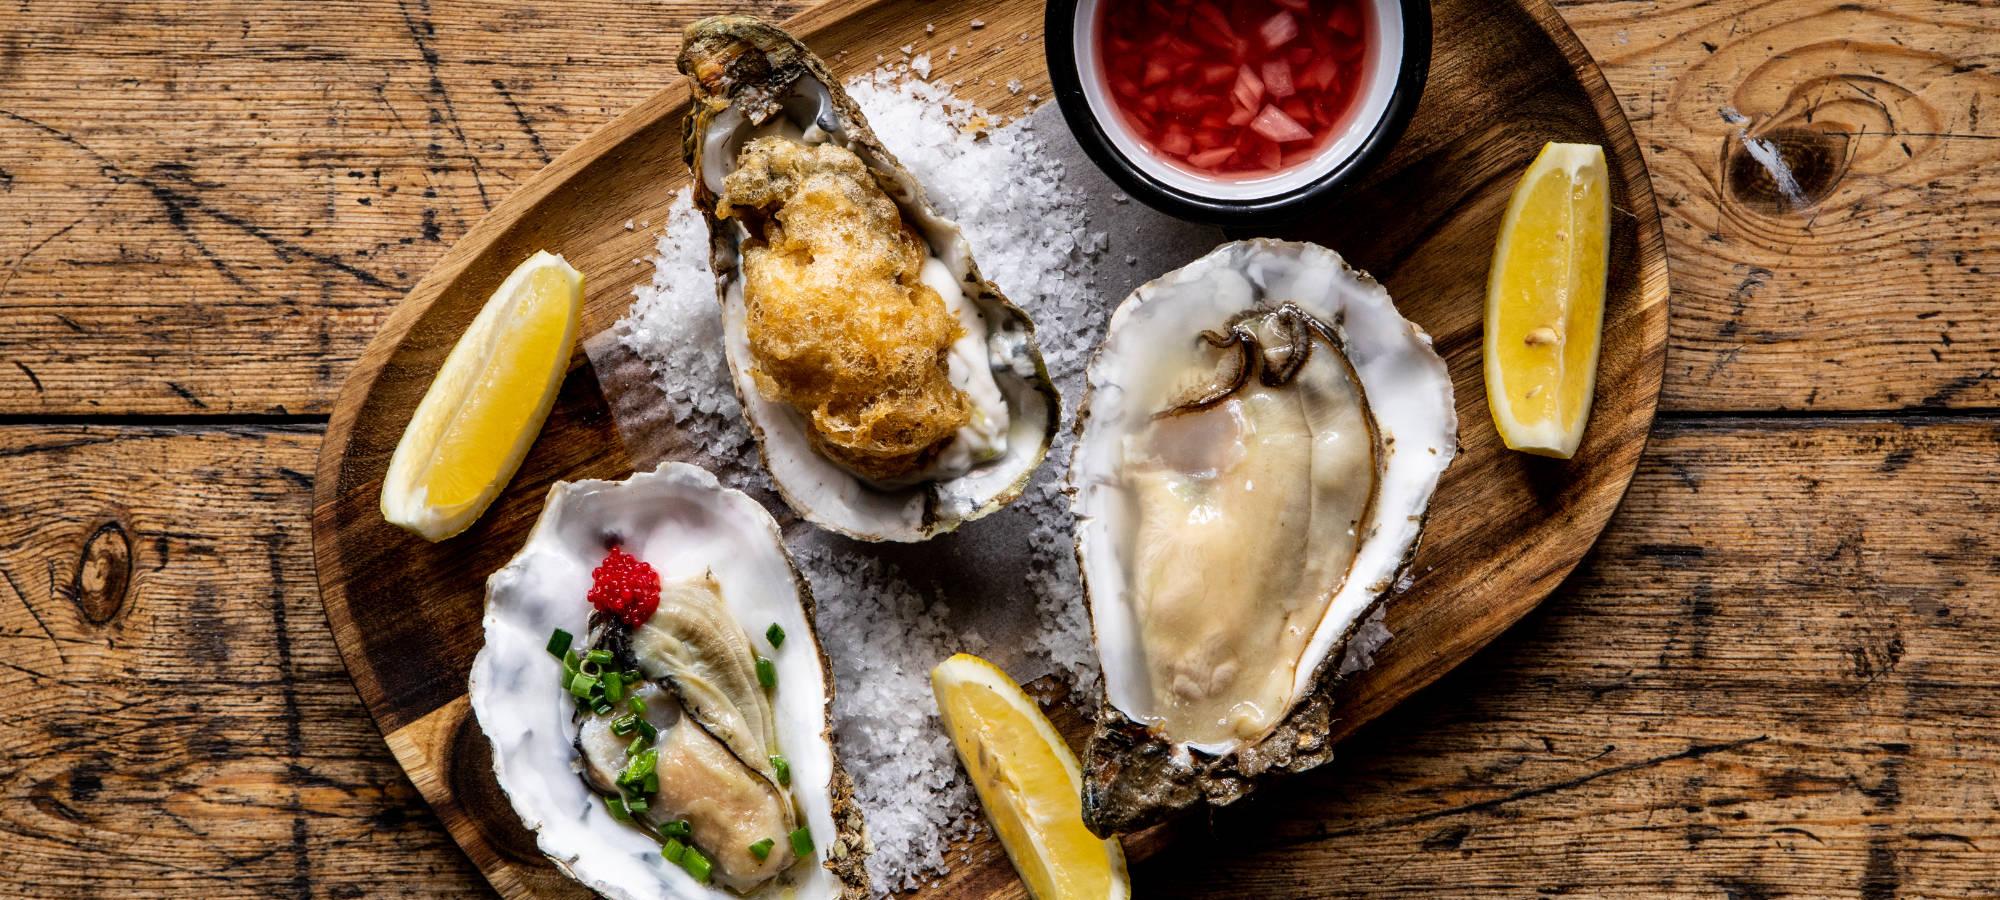 oyster-platter-with-lemon-restaurant-food.jpg